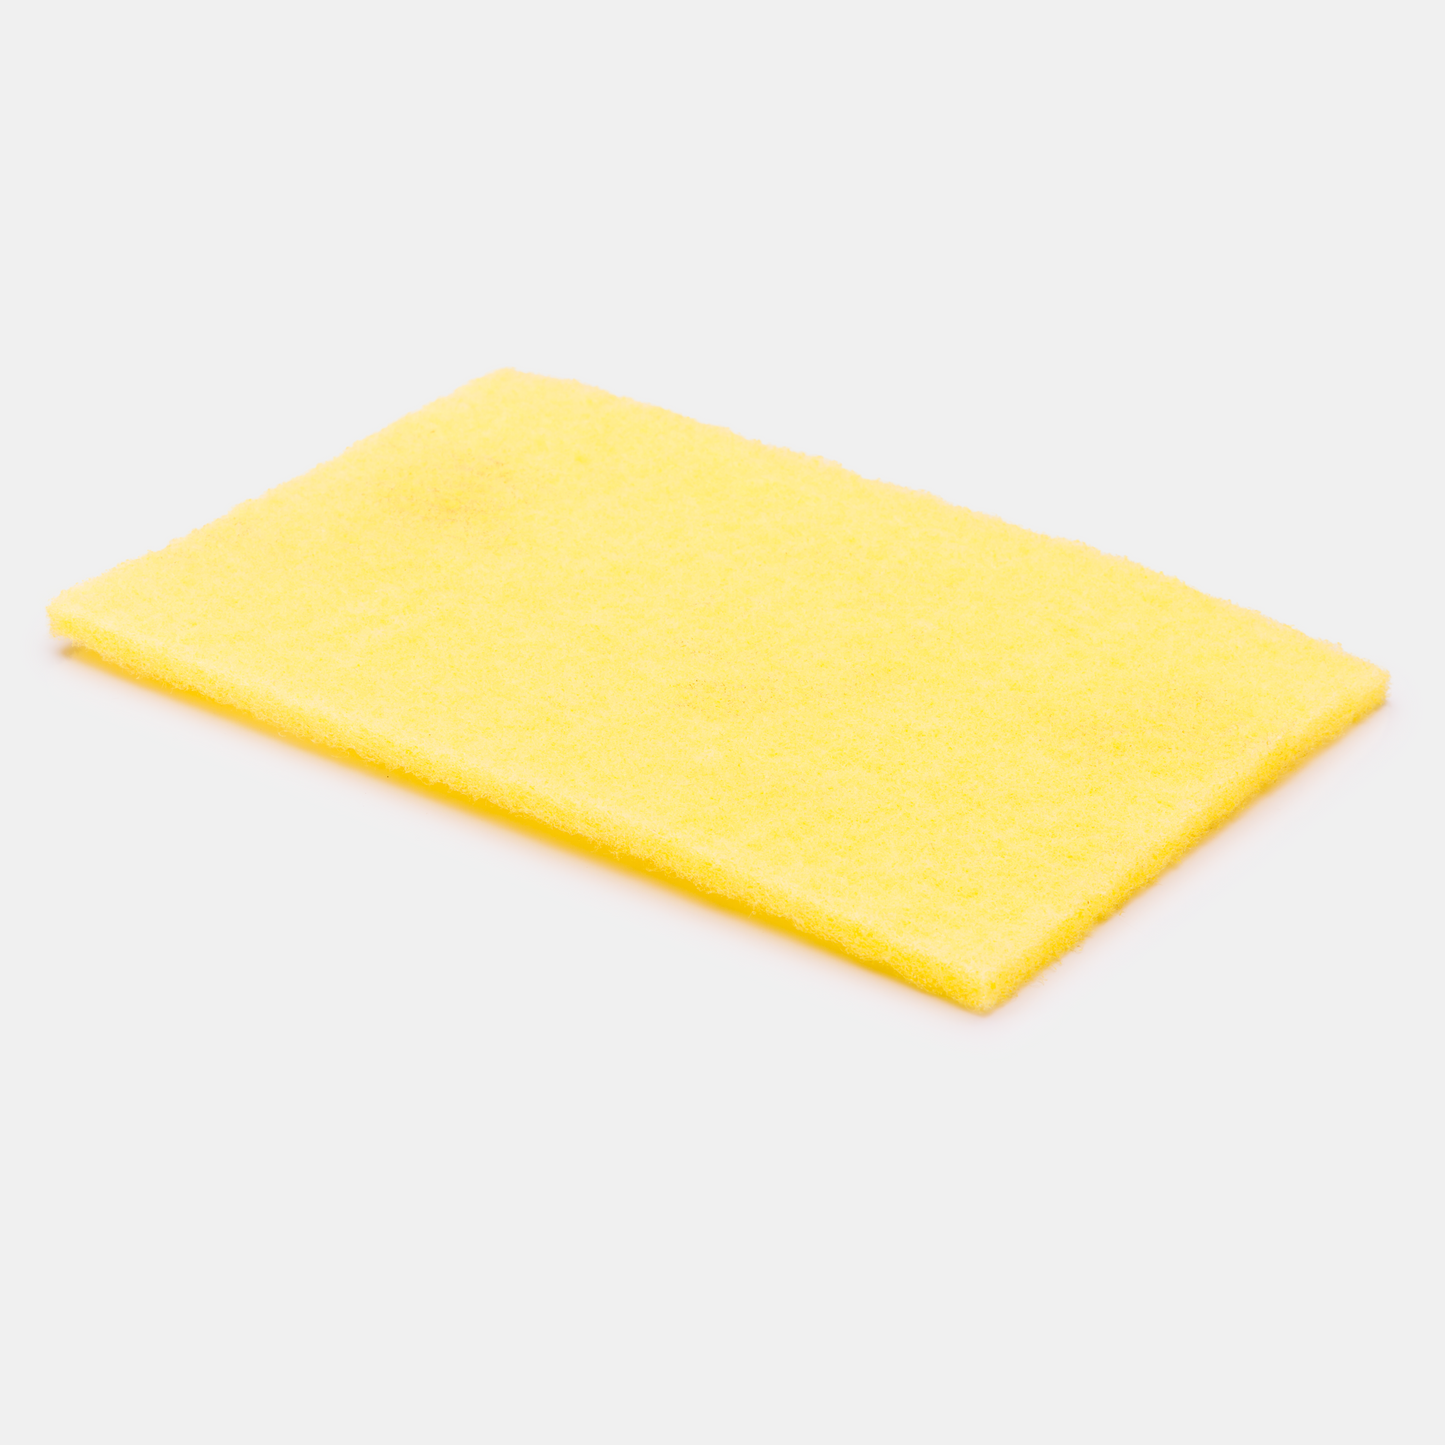 Yellow Scuff Pad - Interior Clean Pad